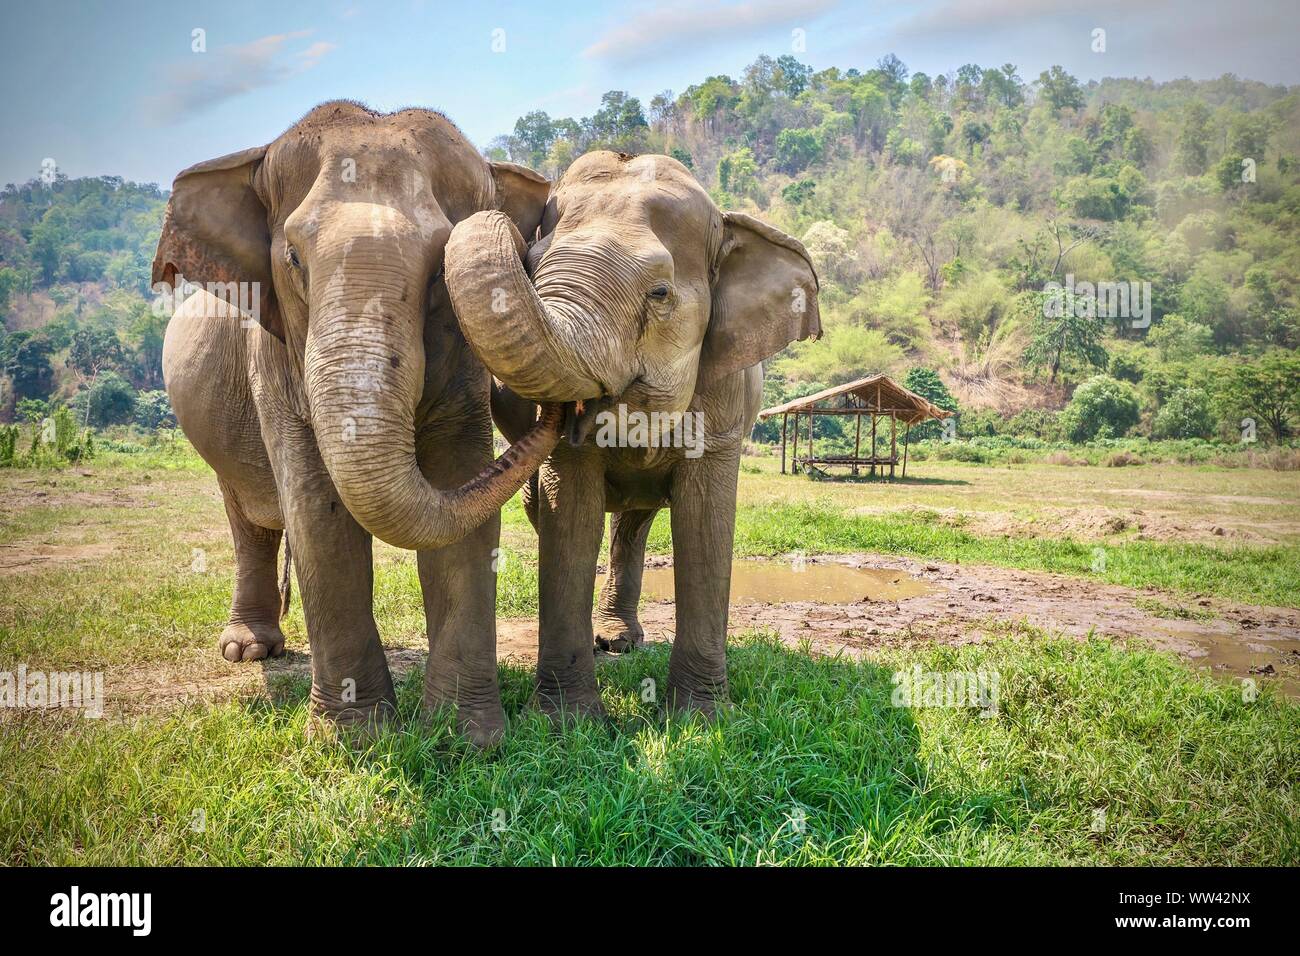 Afectuoso comportamiento animal hembra adulta como dos elefantes asiáticos se tocan con sus troncos y caras. Las zonas rurales del norte de Tailandia. Foto de stock